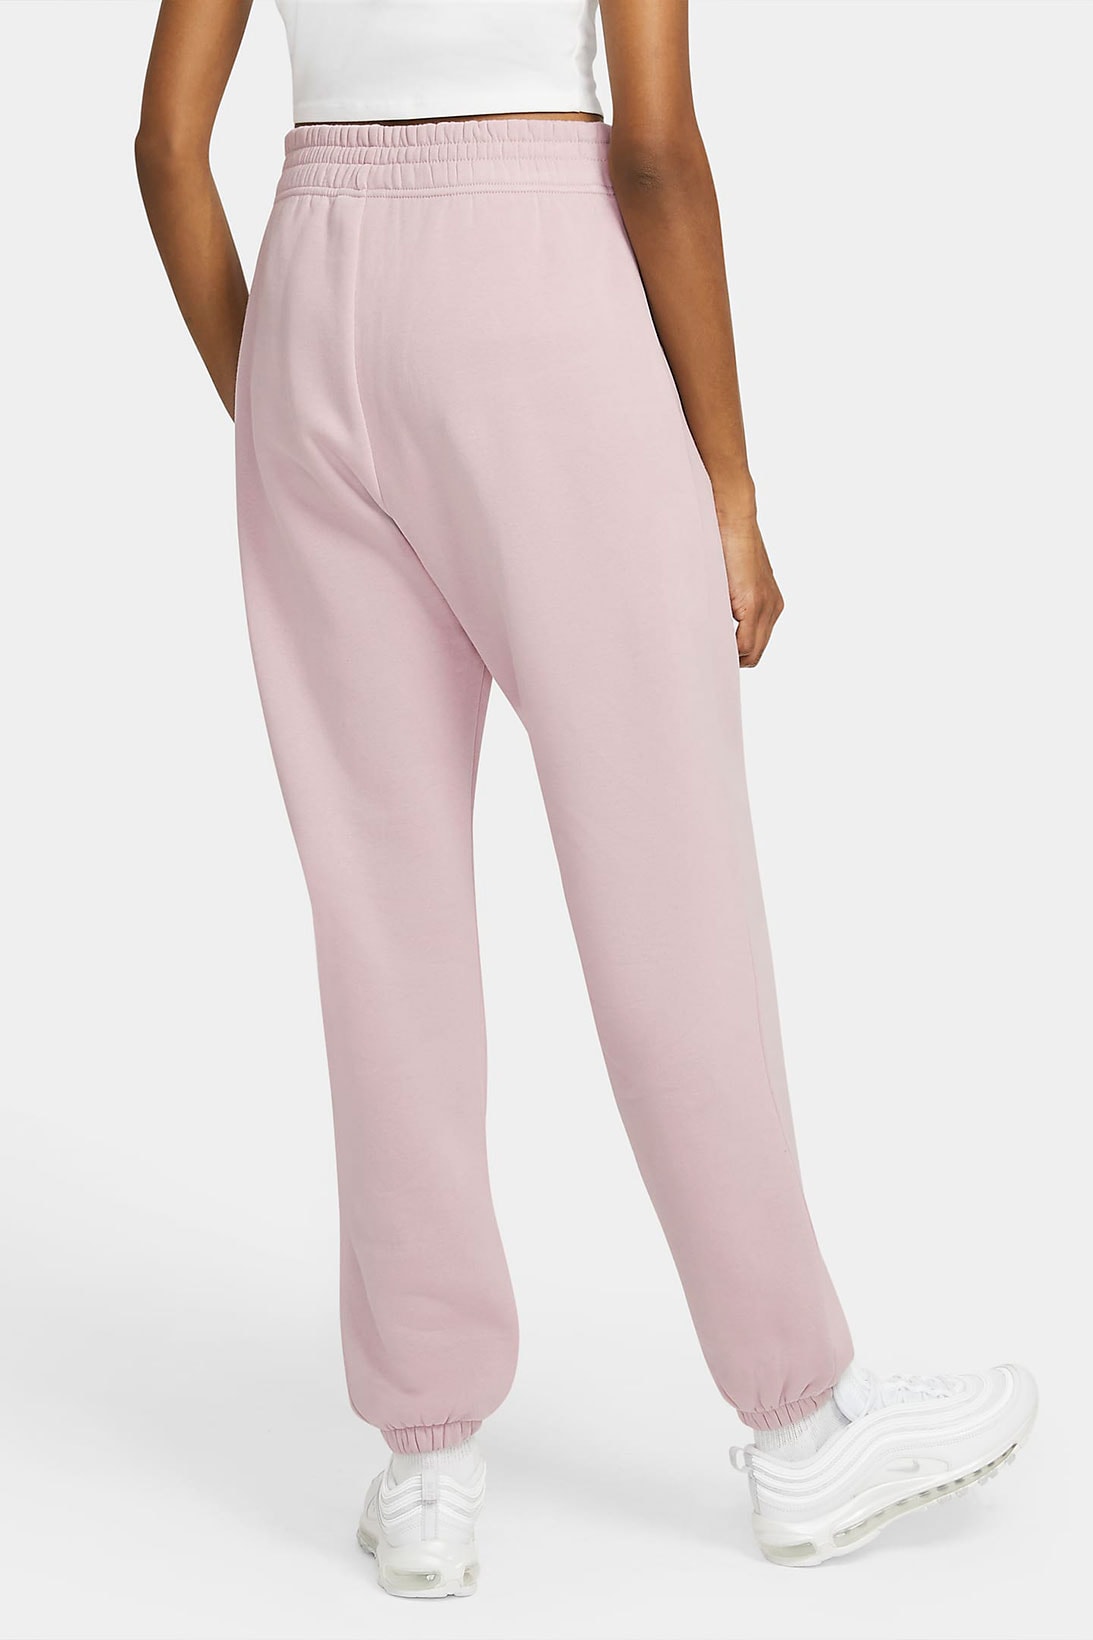 nike sportswear womens fleece sweatpants loungewear pastel pink